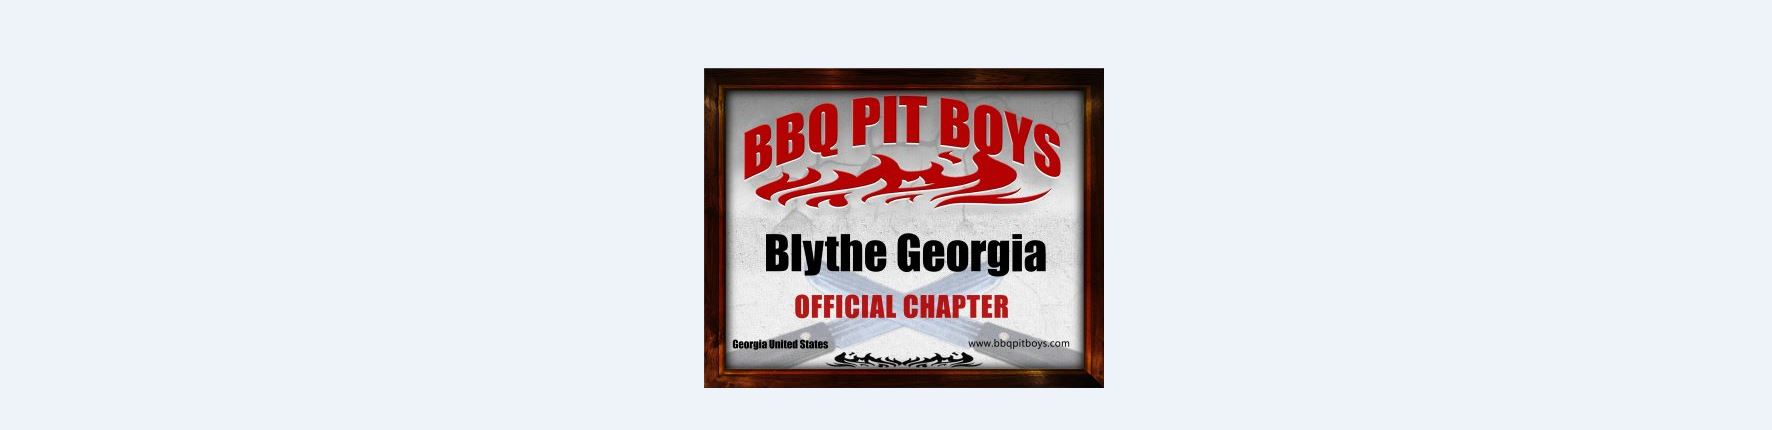 bbq pit boys chapter.JPG